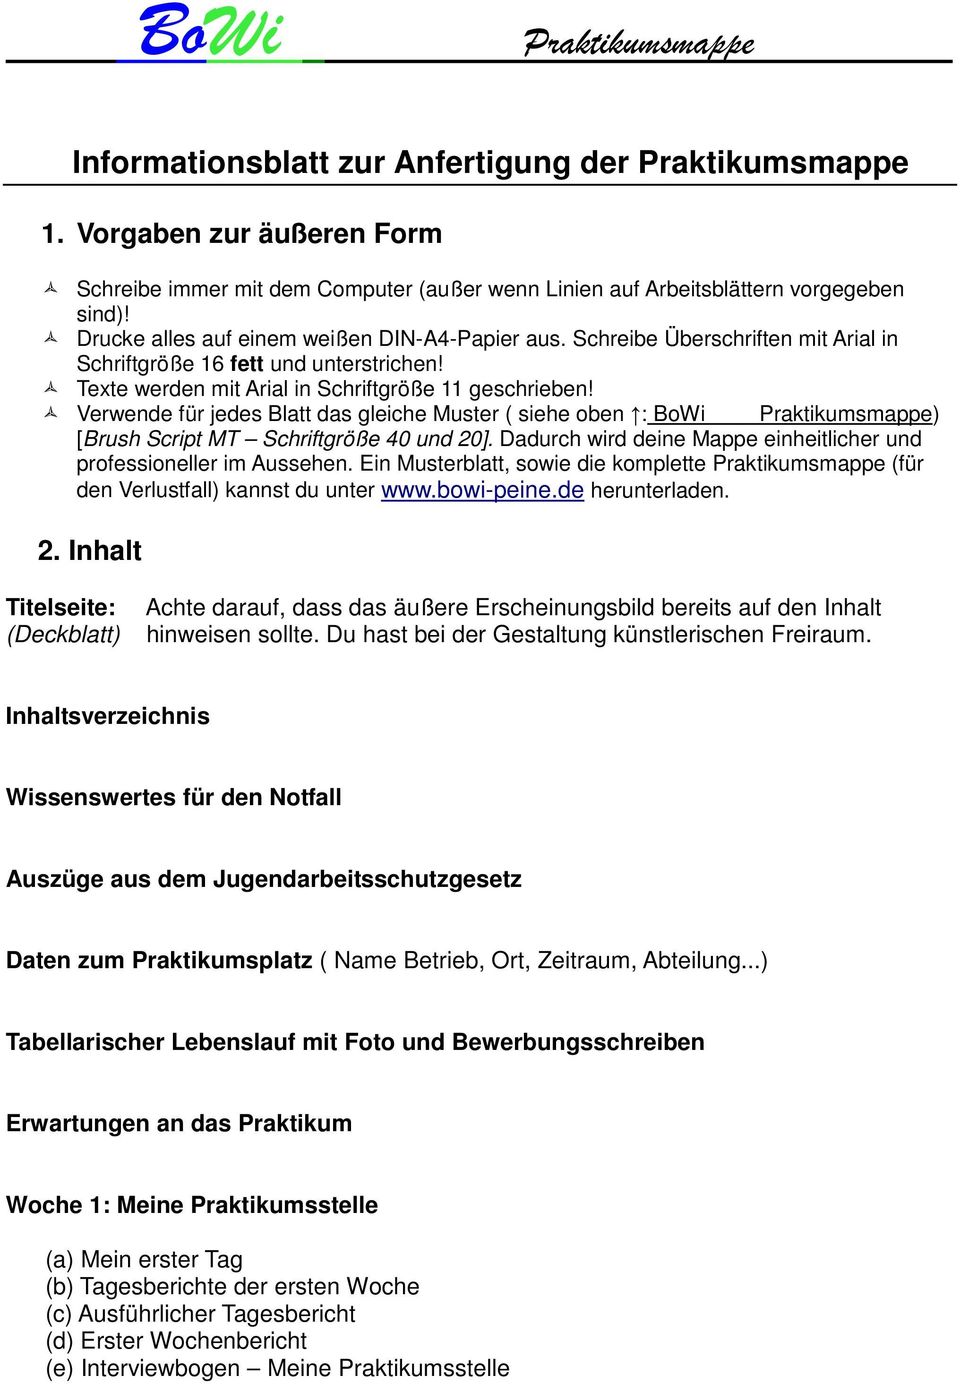 Informationsblatt Zur Anfertigung Der Praktikumsmappe Pdf Free Download